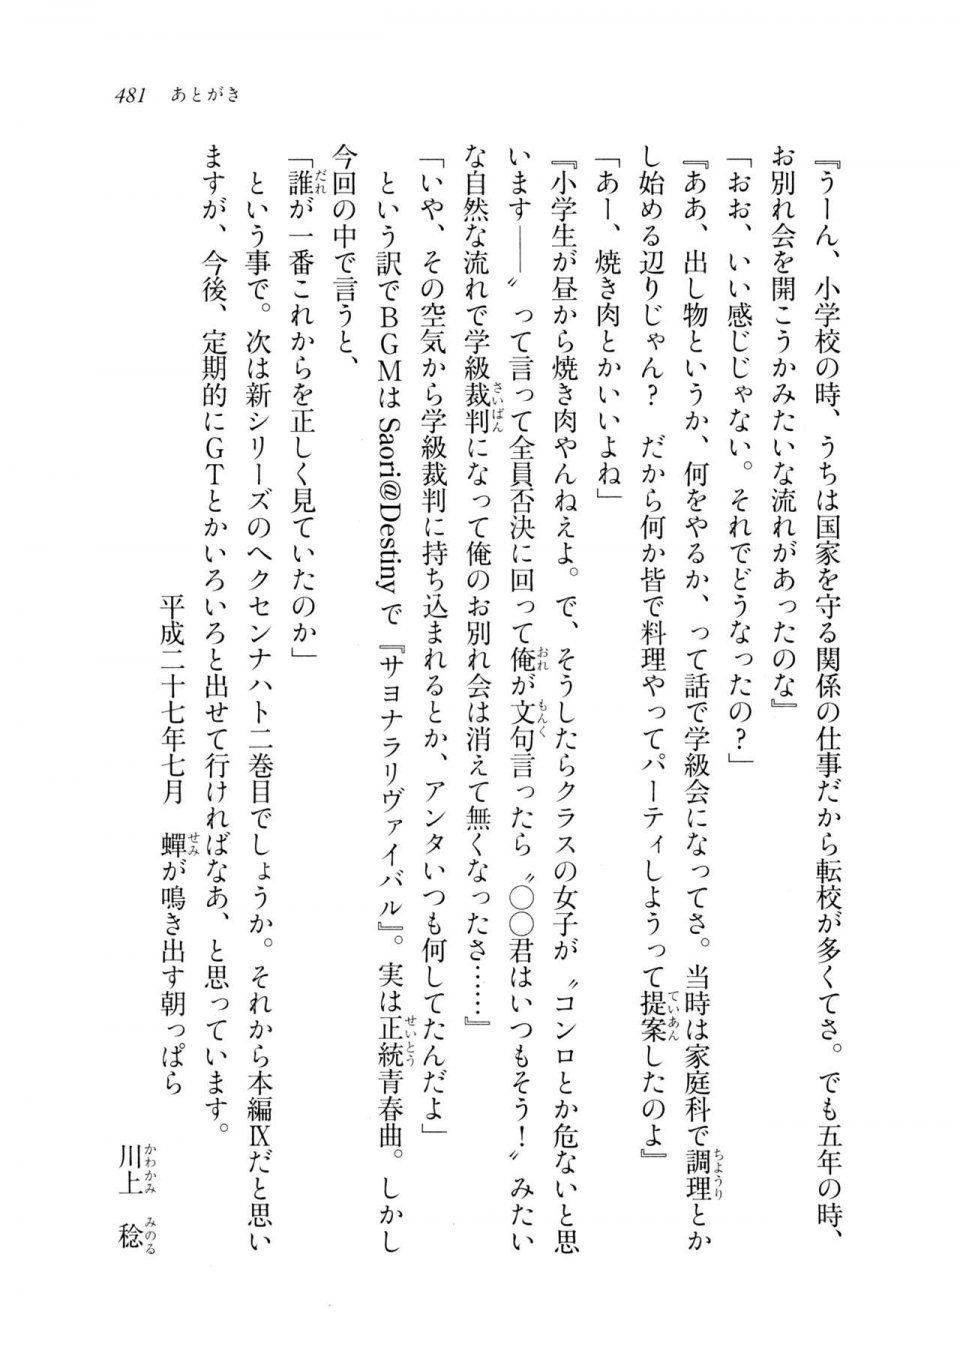 Kyoukai Senjou no Horizon LN Sidestory Vol 2 - Photo #478